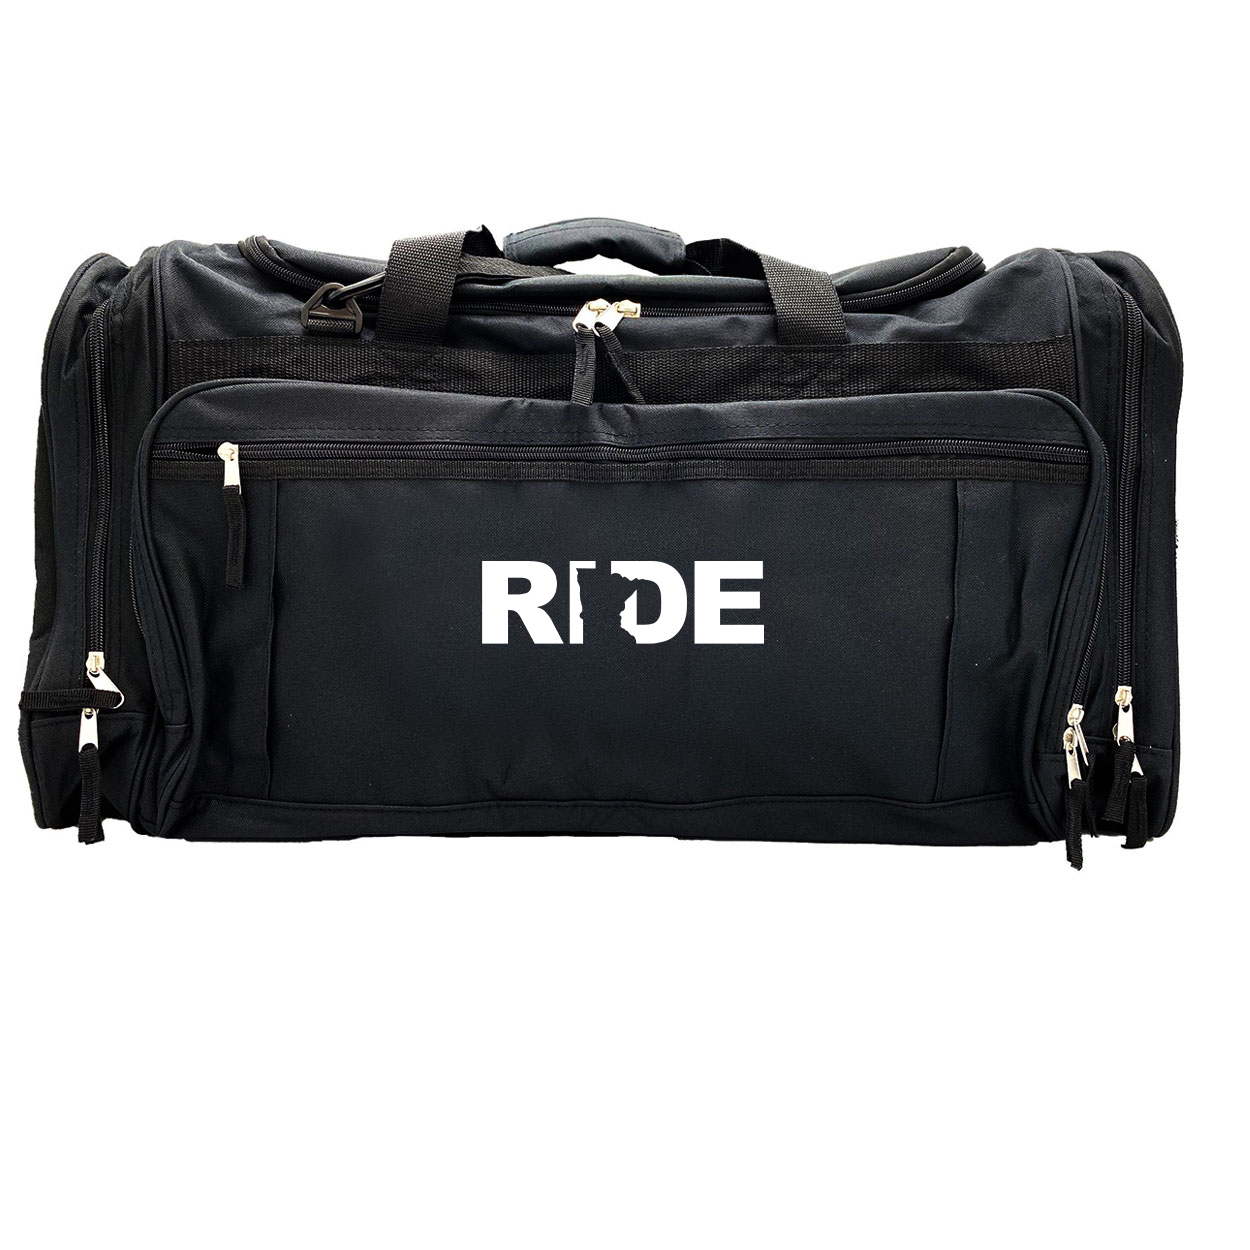 Ride Minnesota Classic Explorer Large Duffel Bag Black (White Logo)